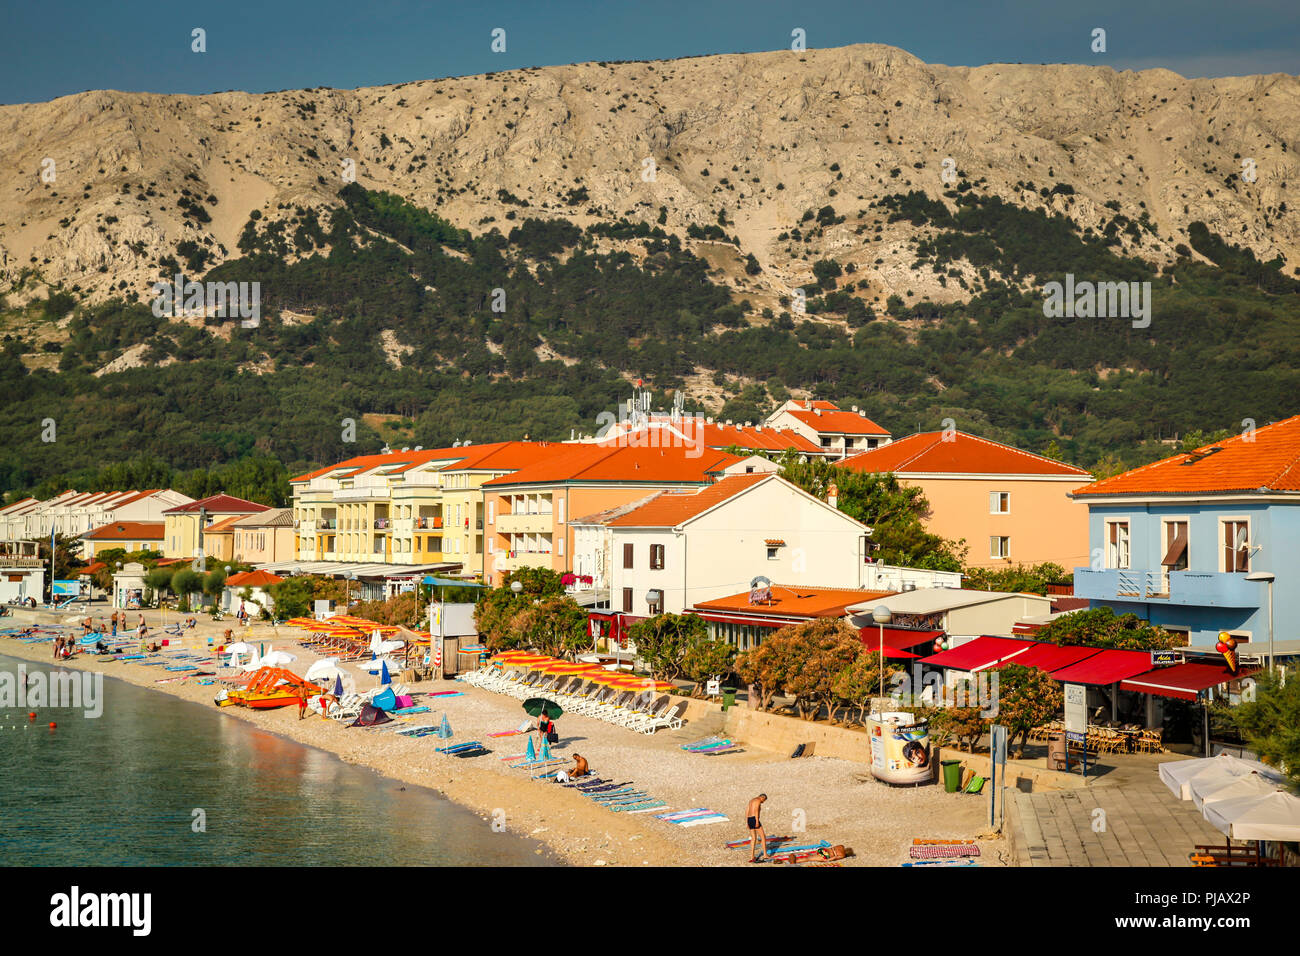 Der kleine Badeort Baska auf der kroatischen Insel Krk in der Adria Stockfoto